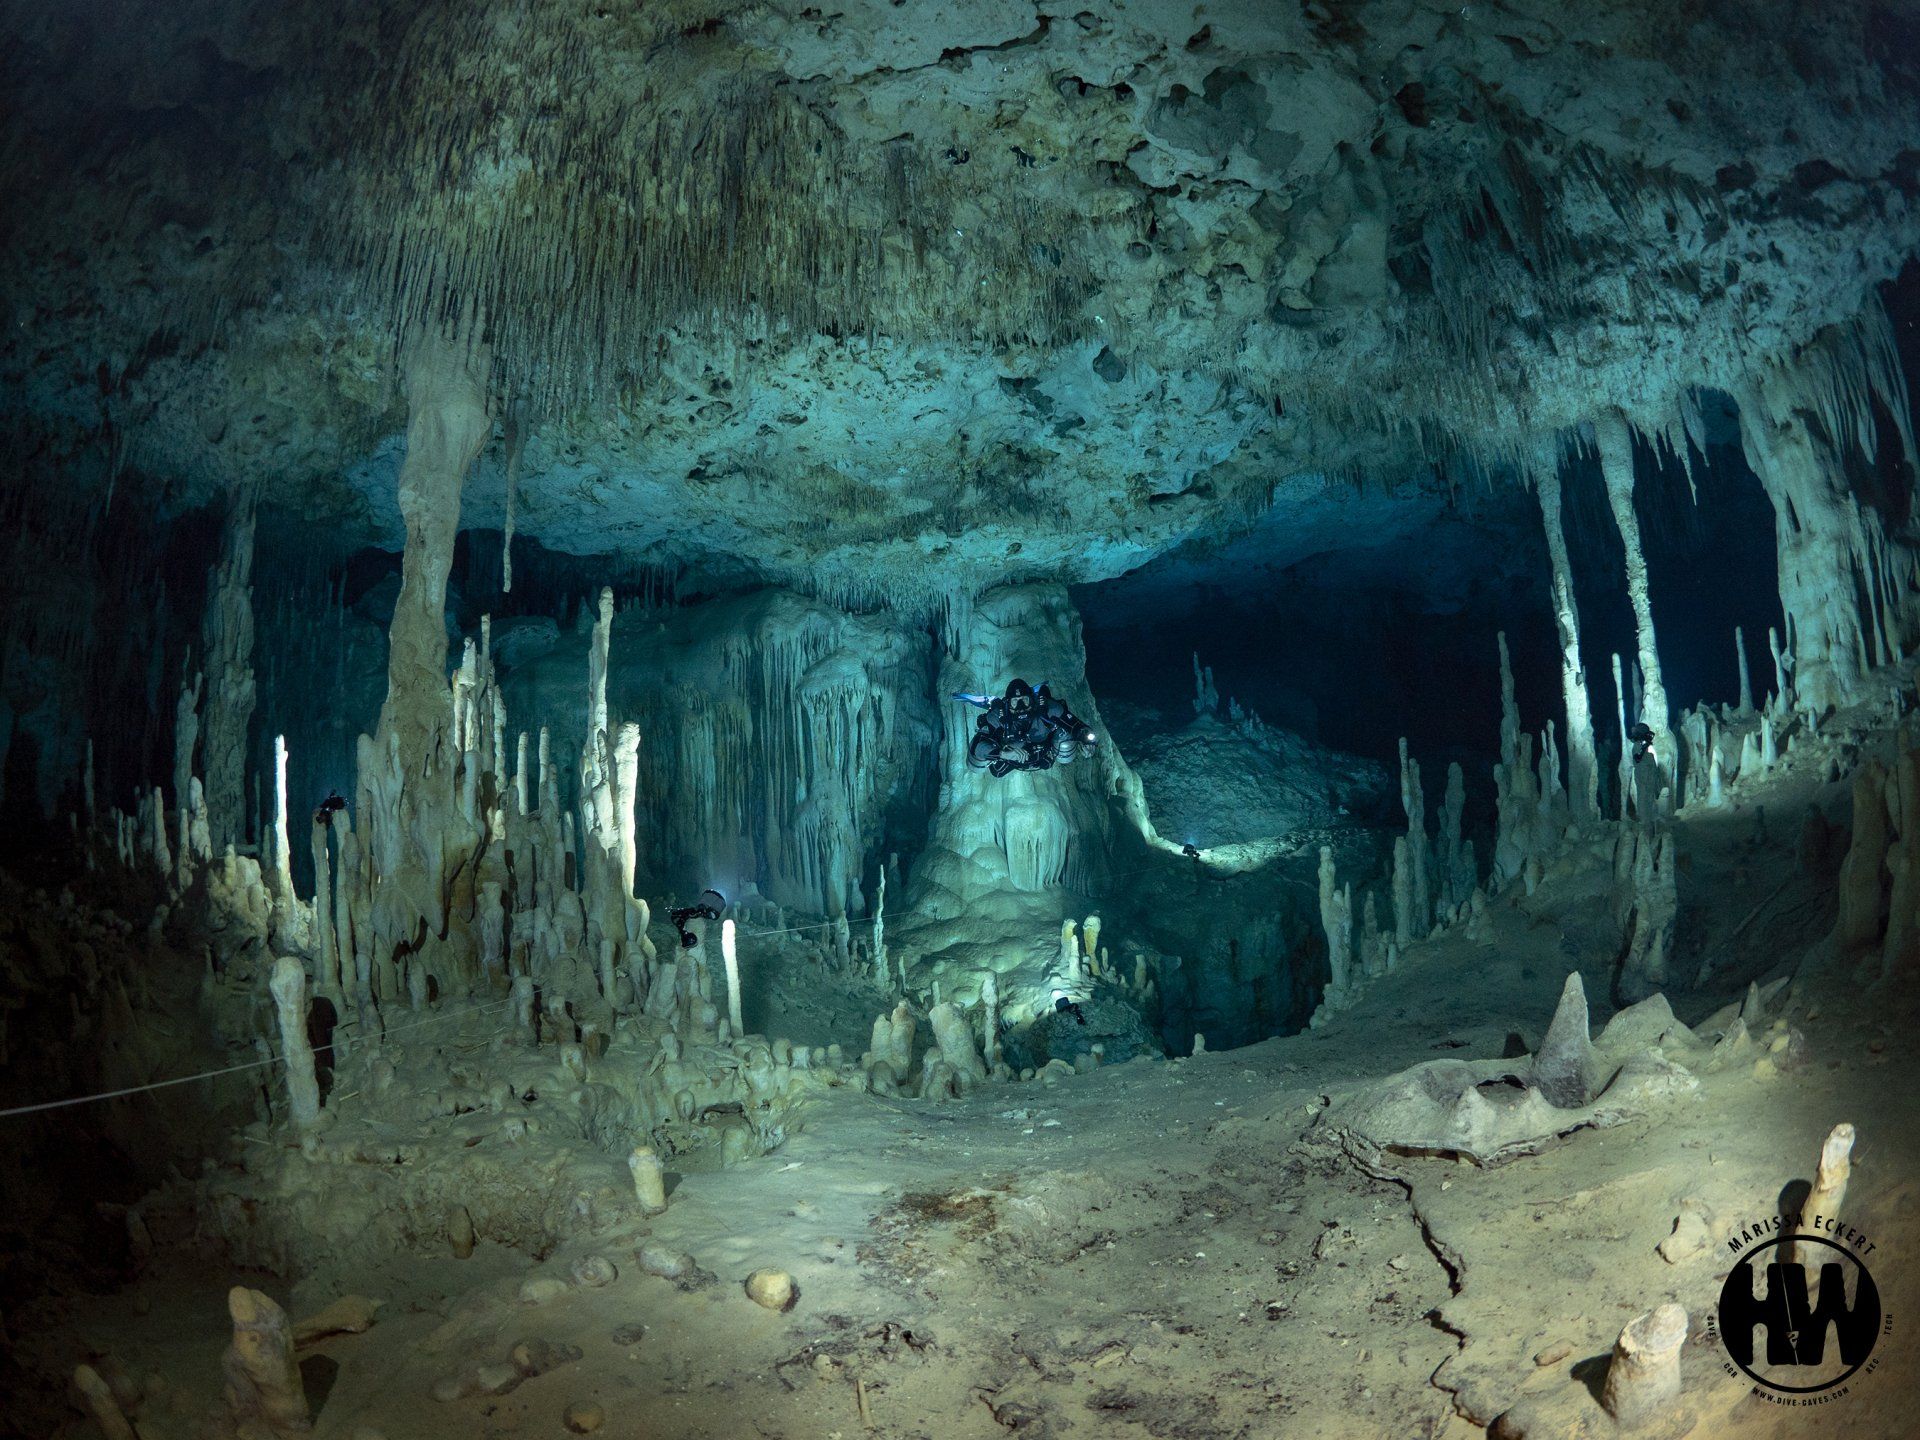 Scuba divers explore underwater caves